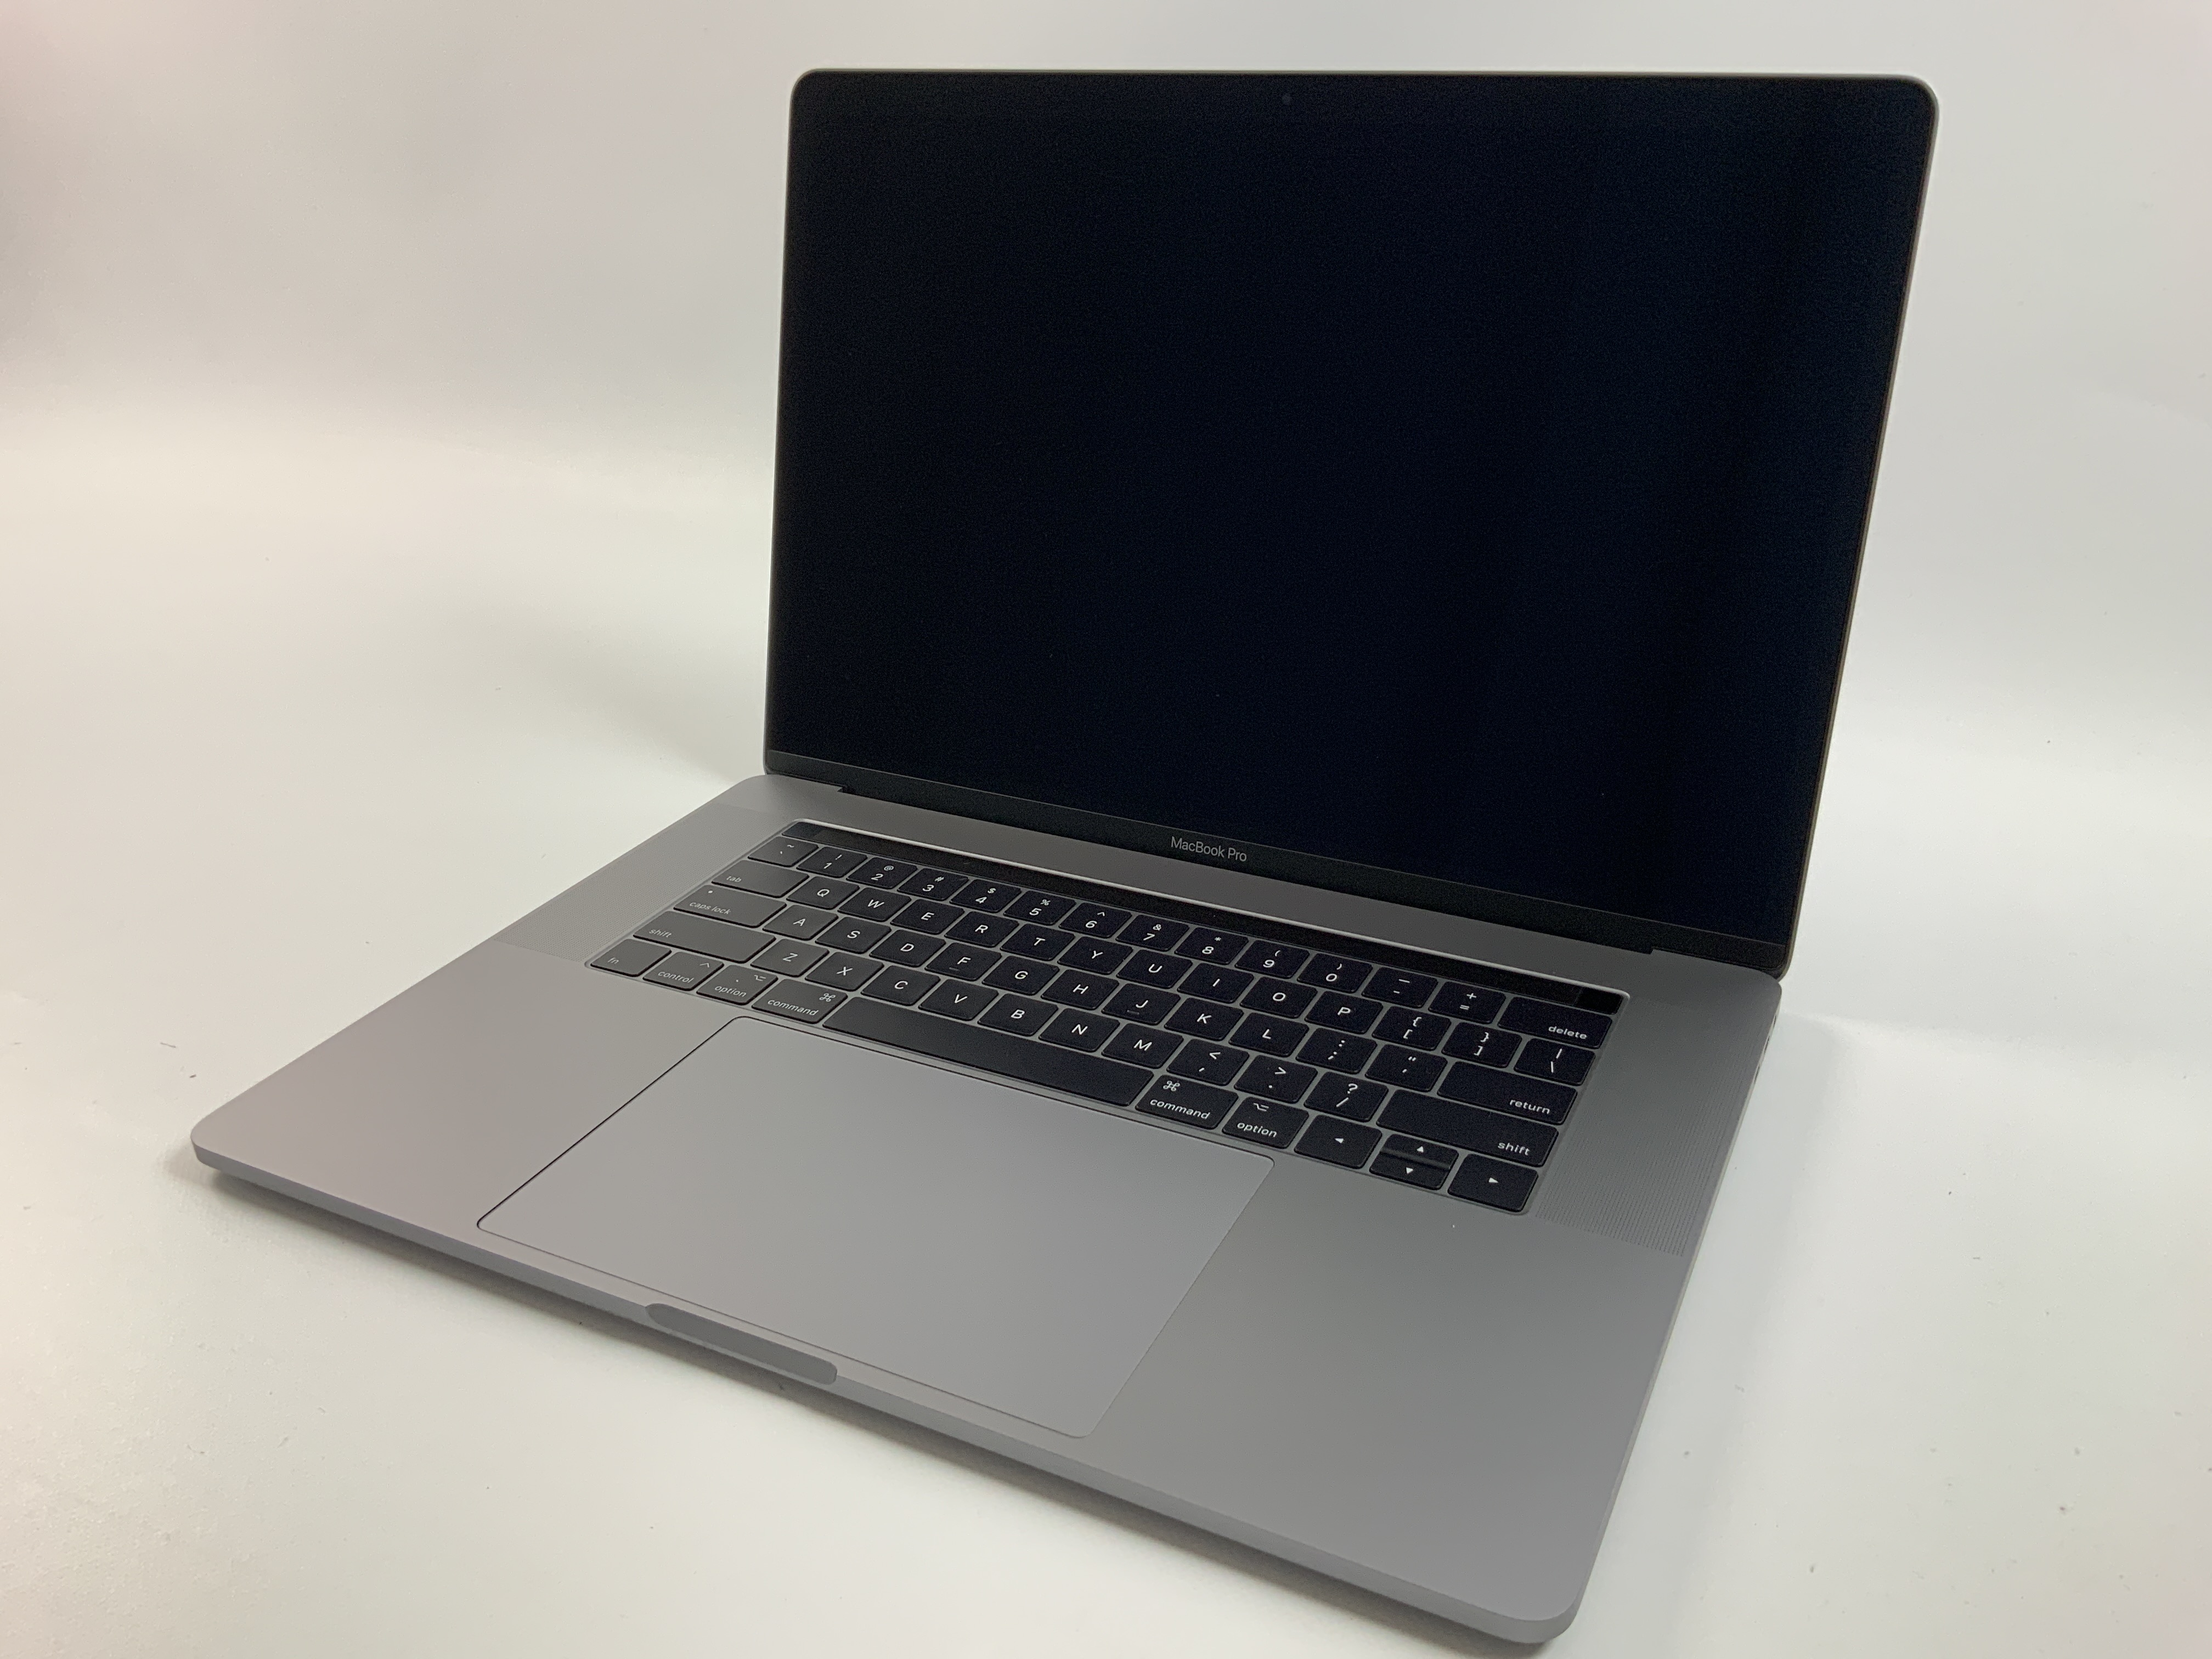 MacBook Pro 15" Touch Bar Mid 2017 (Intel Quad-Core i7 2.8 GHz 16 GB RAM 512 GB SSD), Space Gray, Intel Quad-Core i7 2.8 GHz, 16 GB RAM, 512 GB SSD, Kuva 1